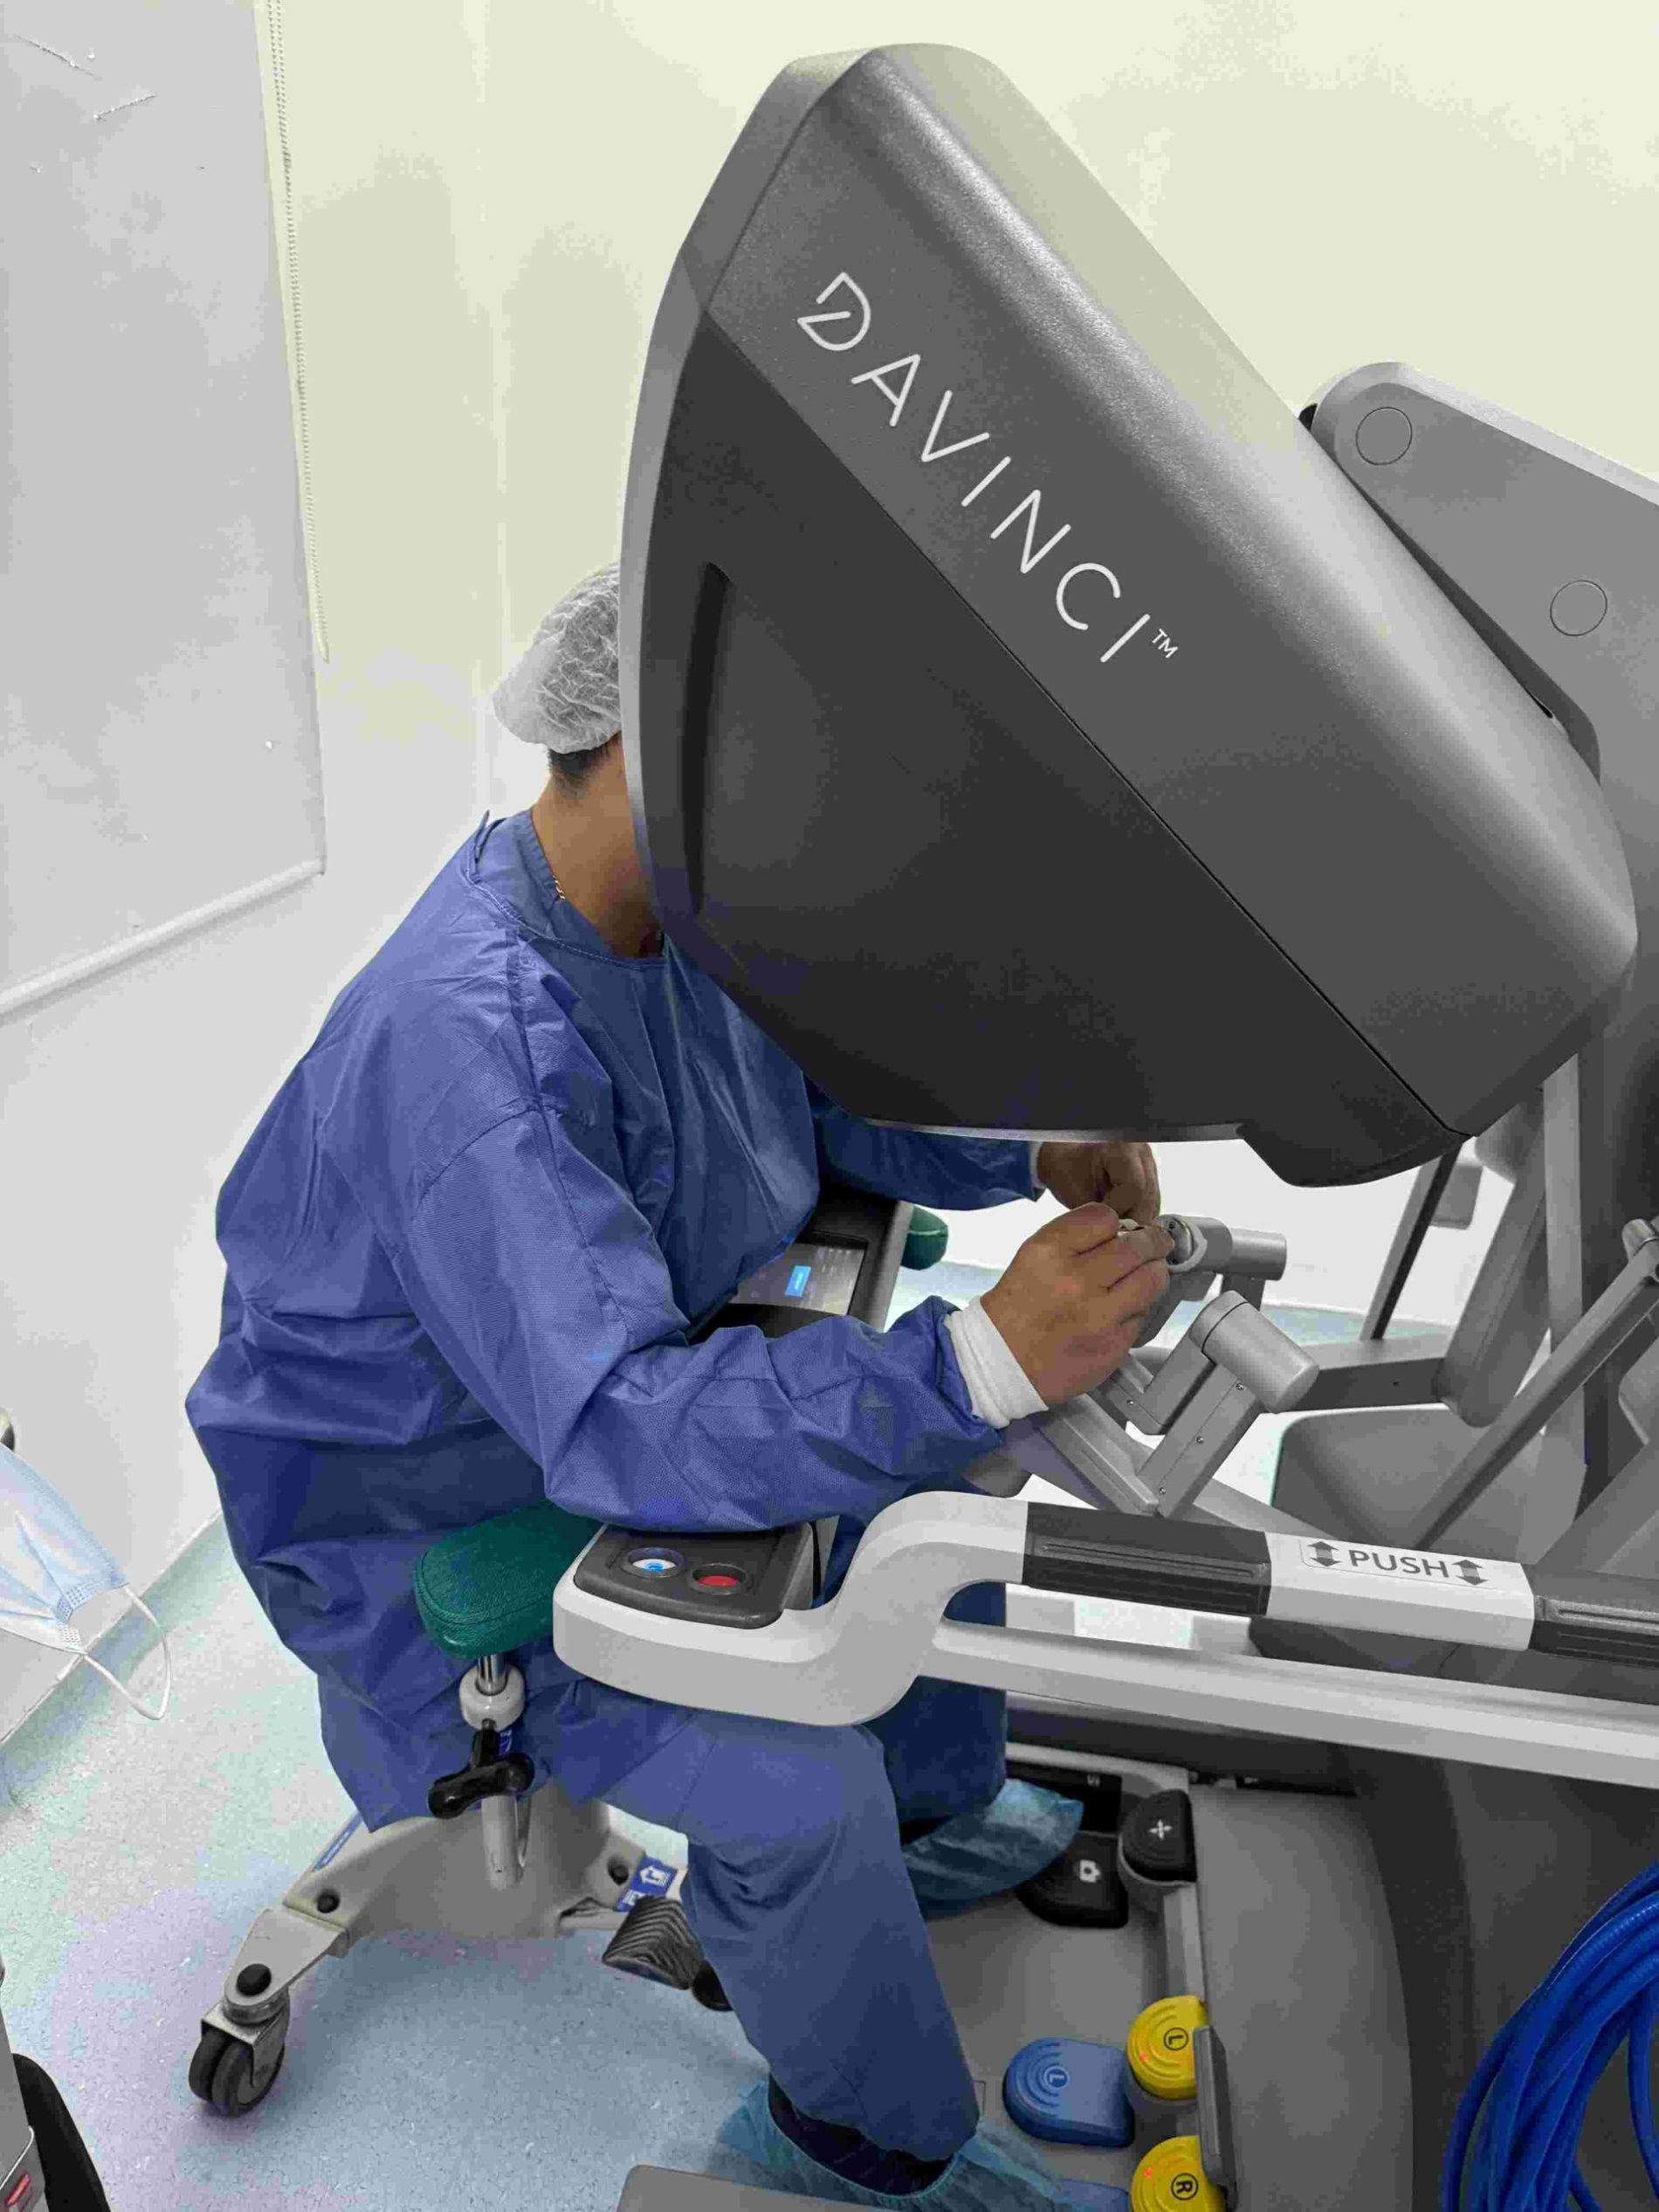 En su aniversario 90 el Instituto Nacional de Cancerología llega a las 1.000 cirugías con el robot da Vinci